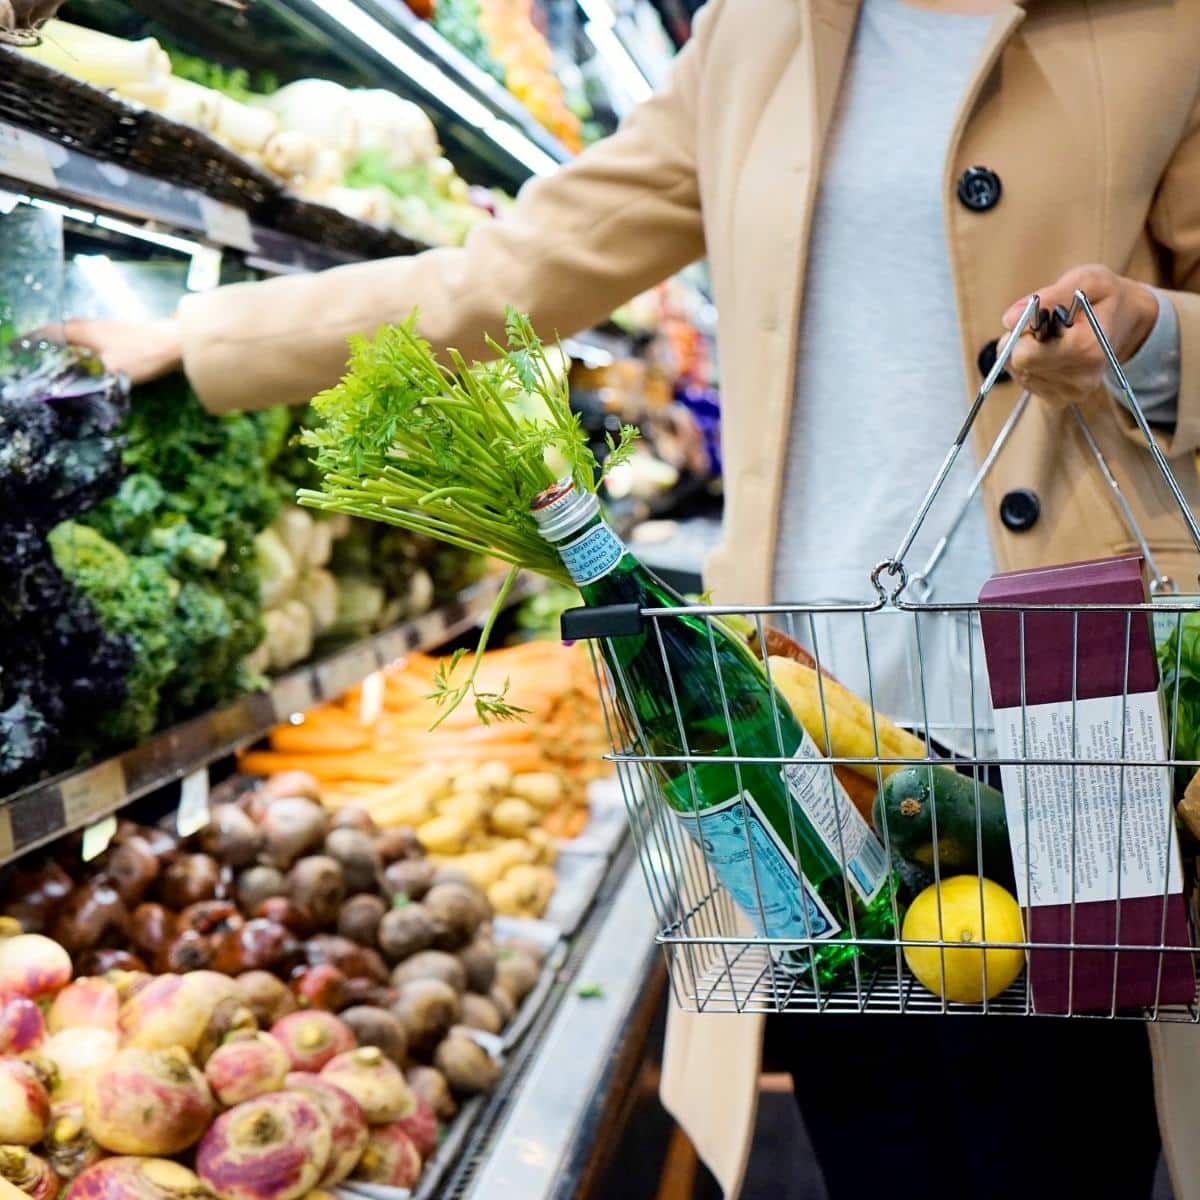 Vegan tips for beginners grocery shopping